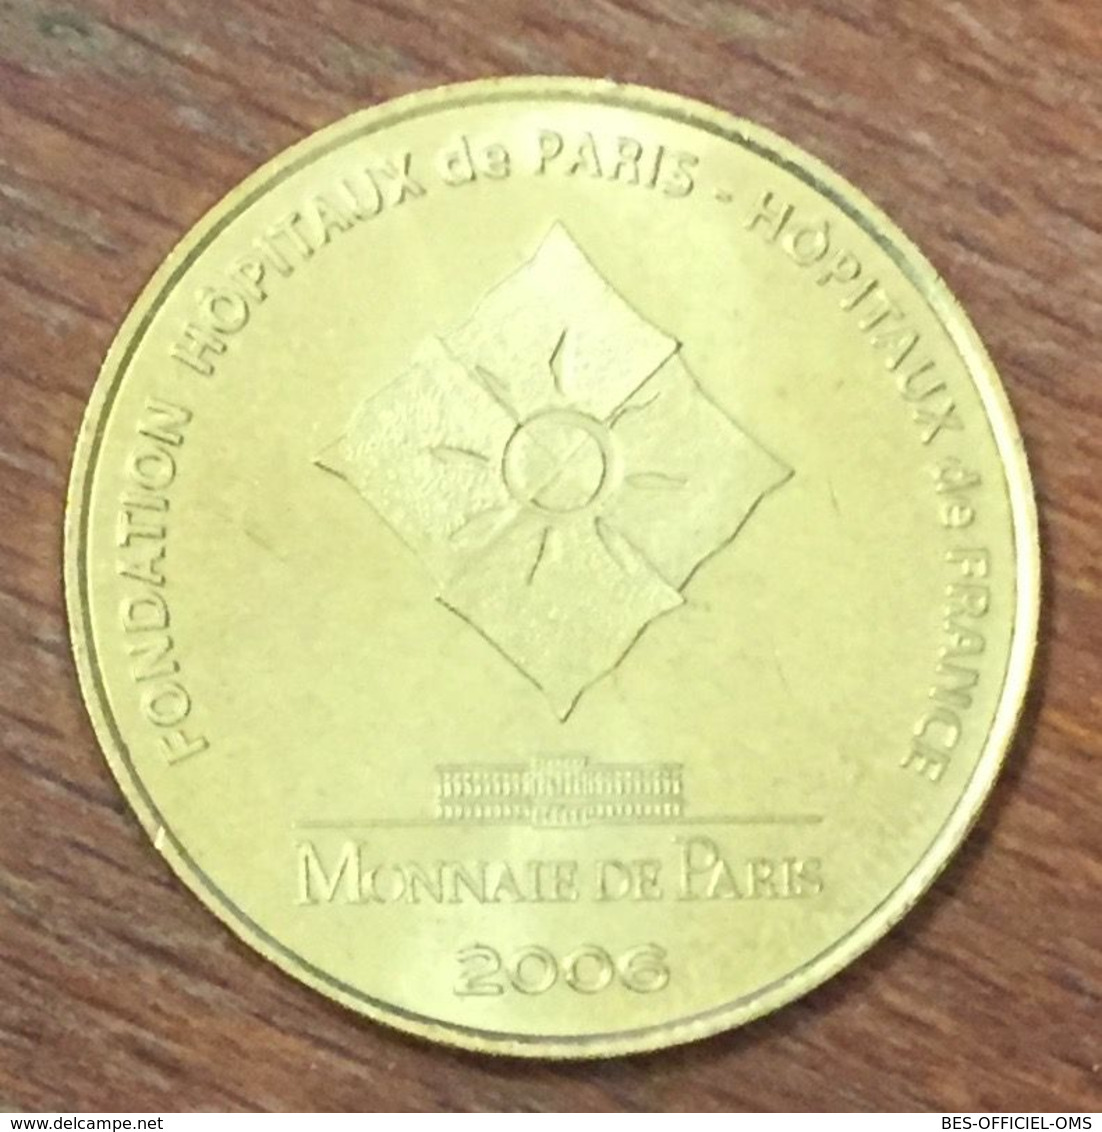 75005 PARIS FONDATION HÔPITAUX PIÈCES JAUNES MDP 2006 MINI MÉDAILLE SOUVENIR MONNAIE DE PARIS JETON MEDALS TOKENS COINS - 2006